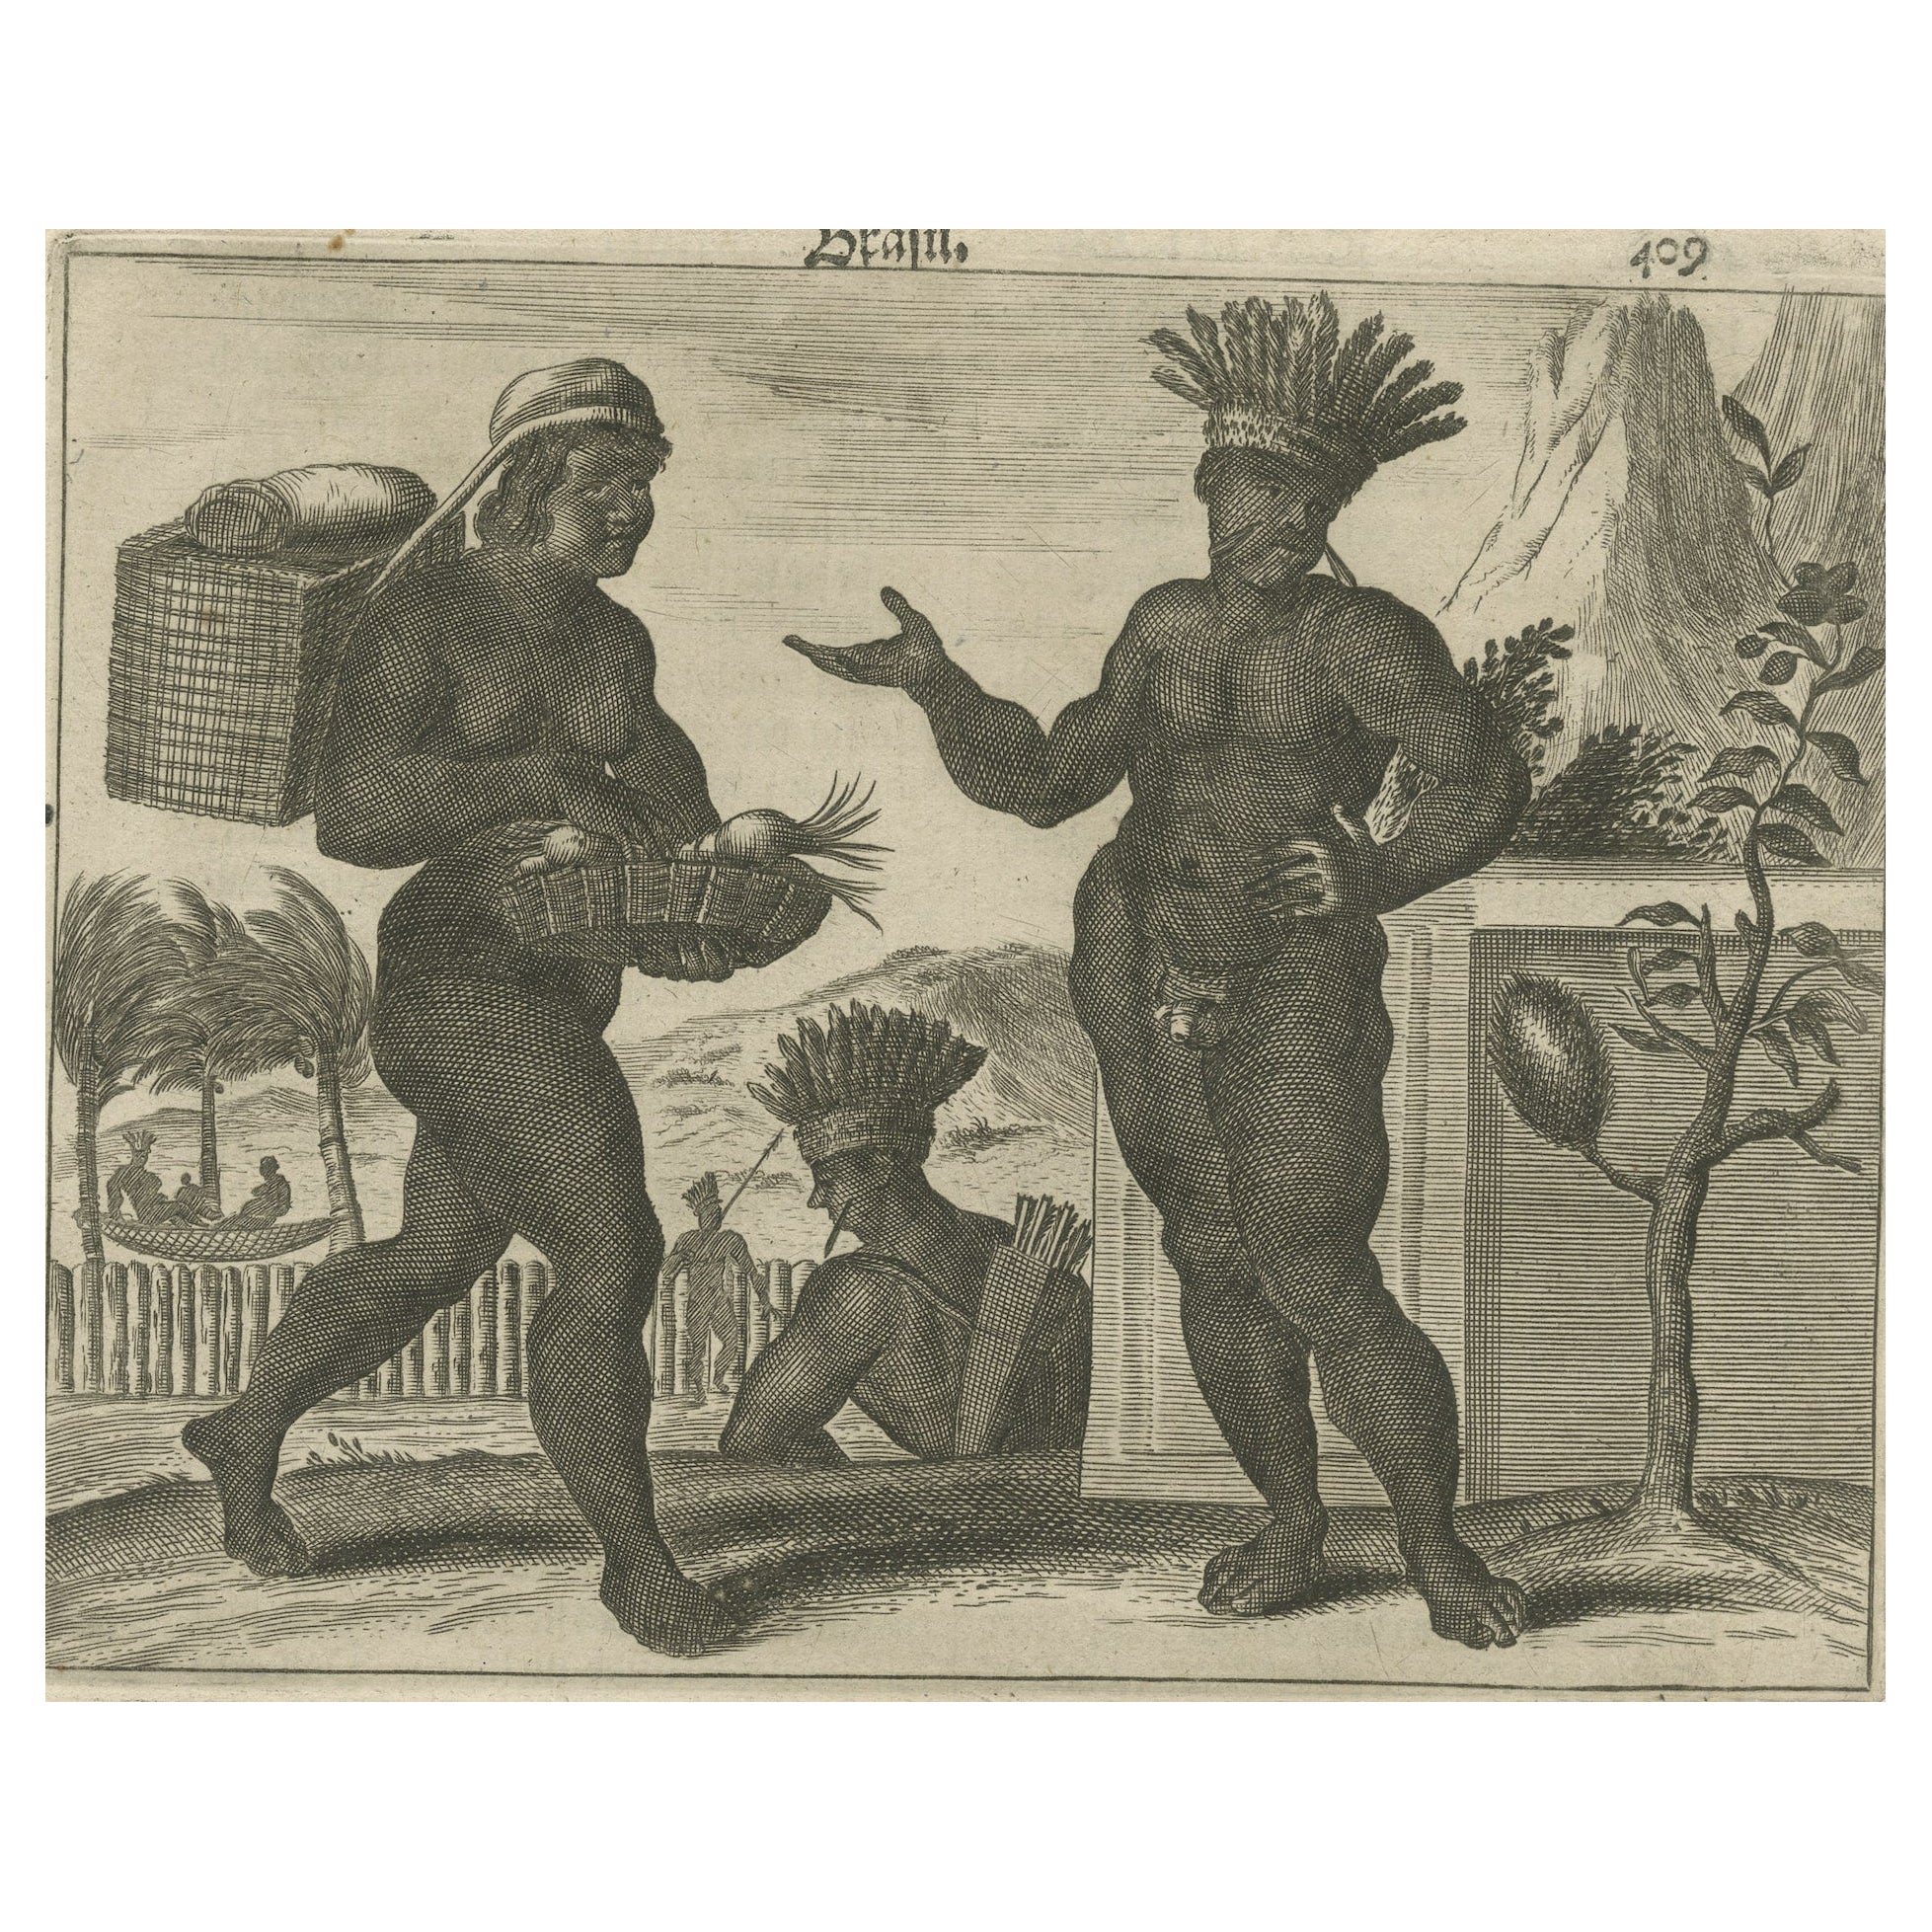 Life quotidienne du Brésil au début du 17e siècle sur une gravure sur cuivre de Montanus